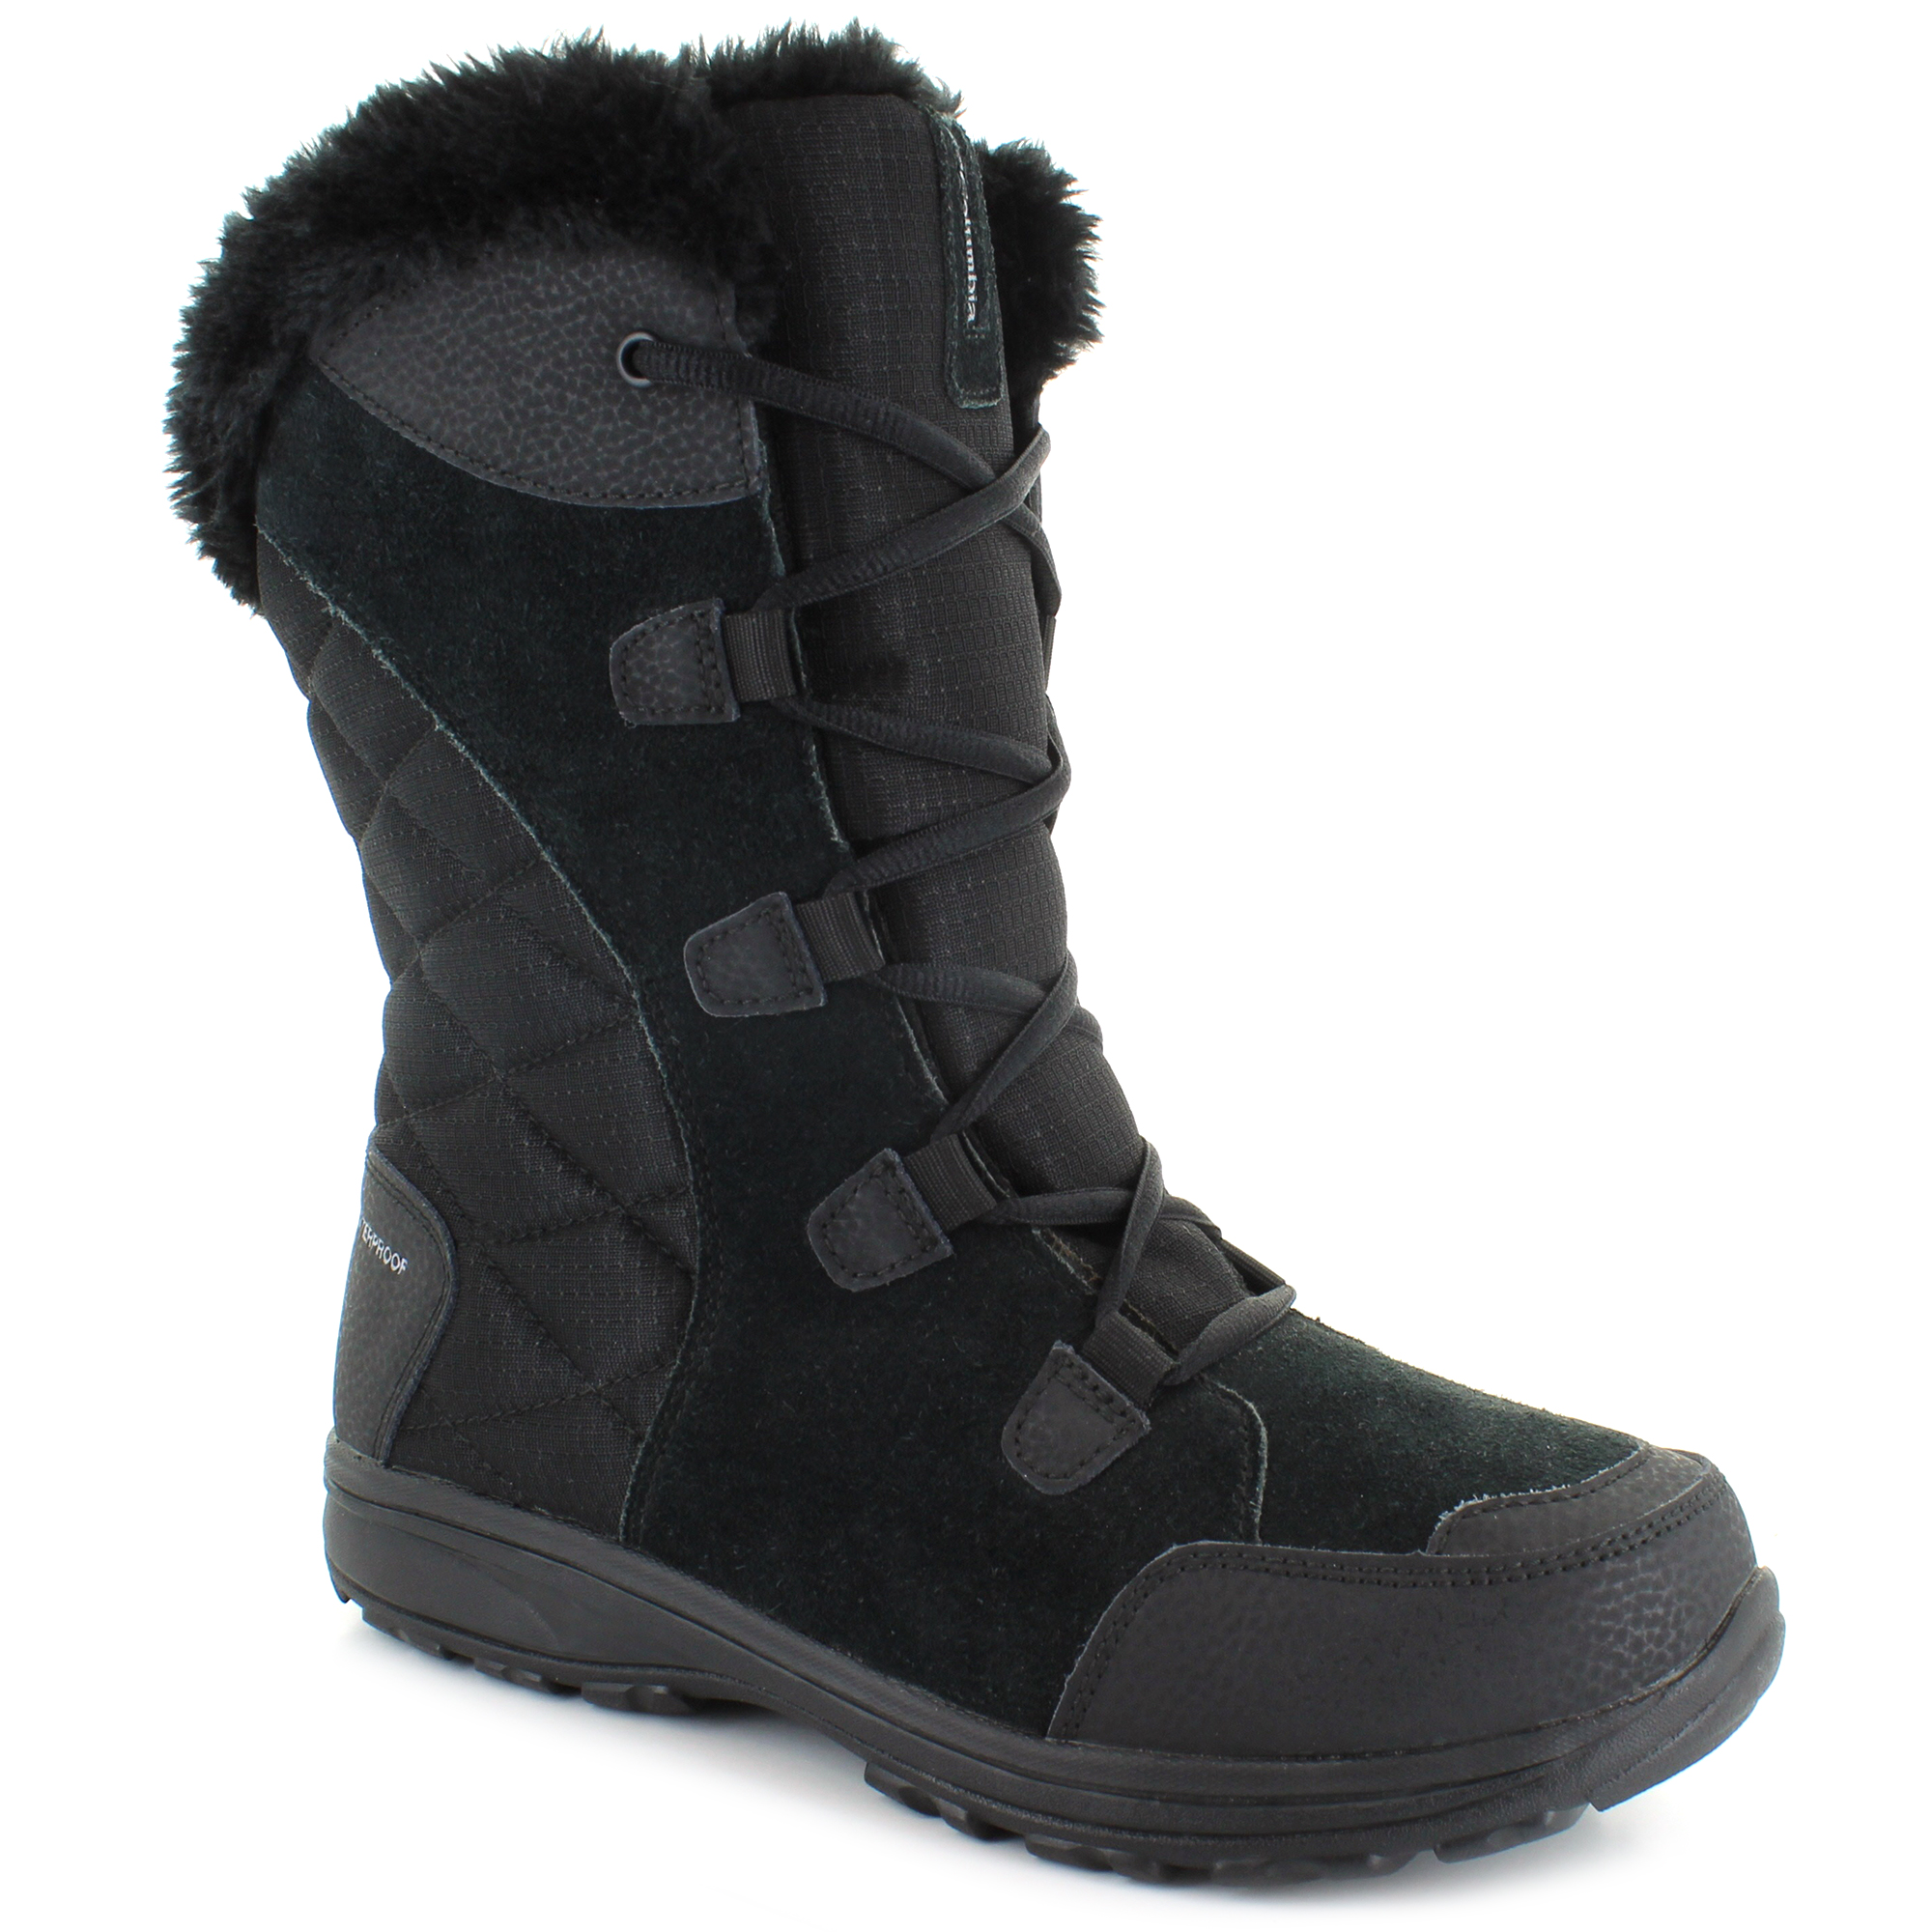 Snow & Winter Boots | Shop Now at SHOE DEPT. ENCORE